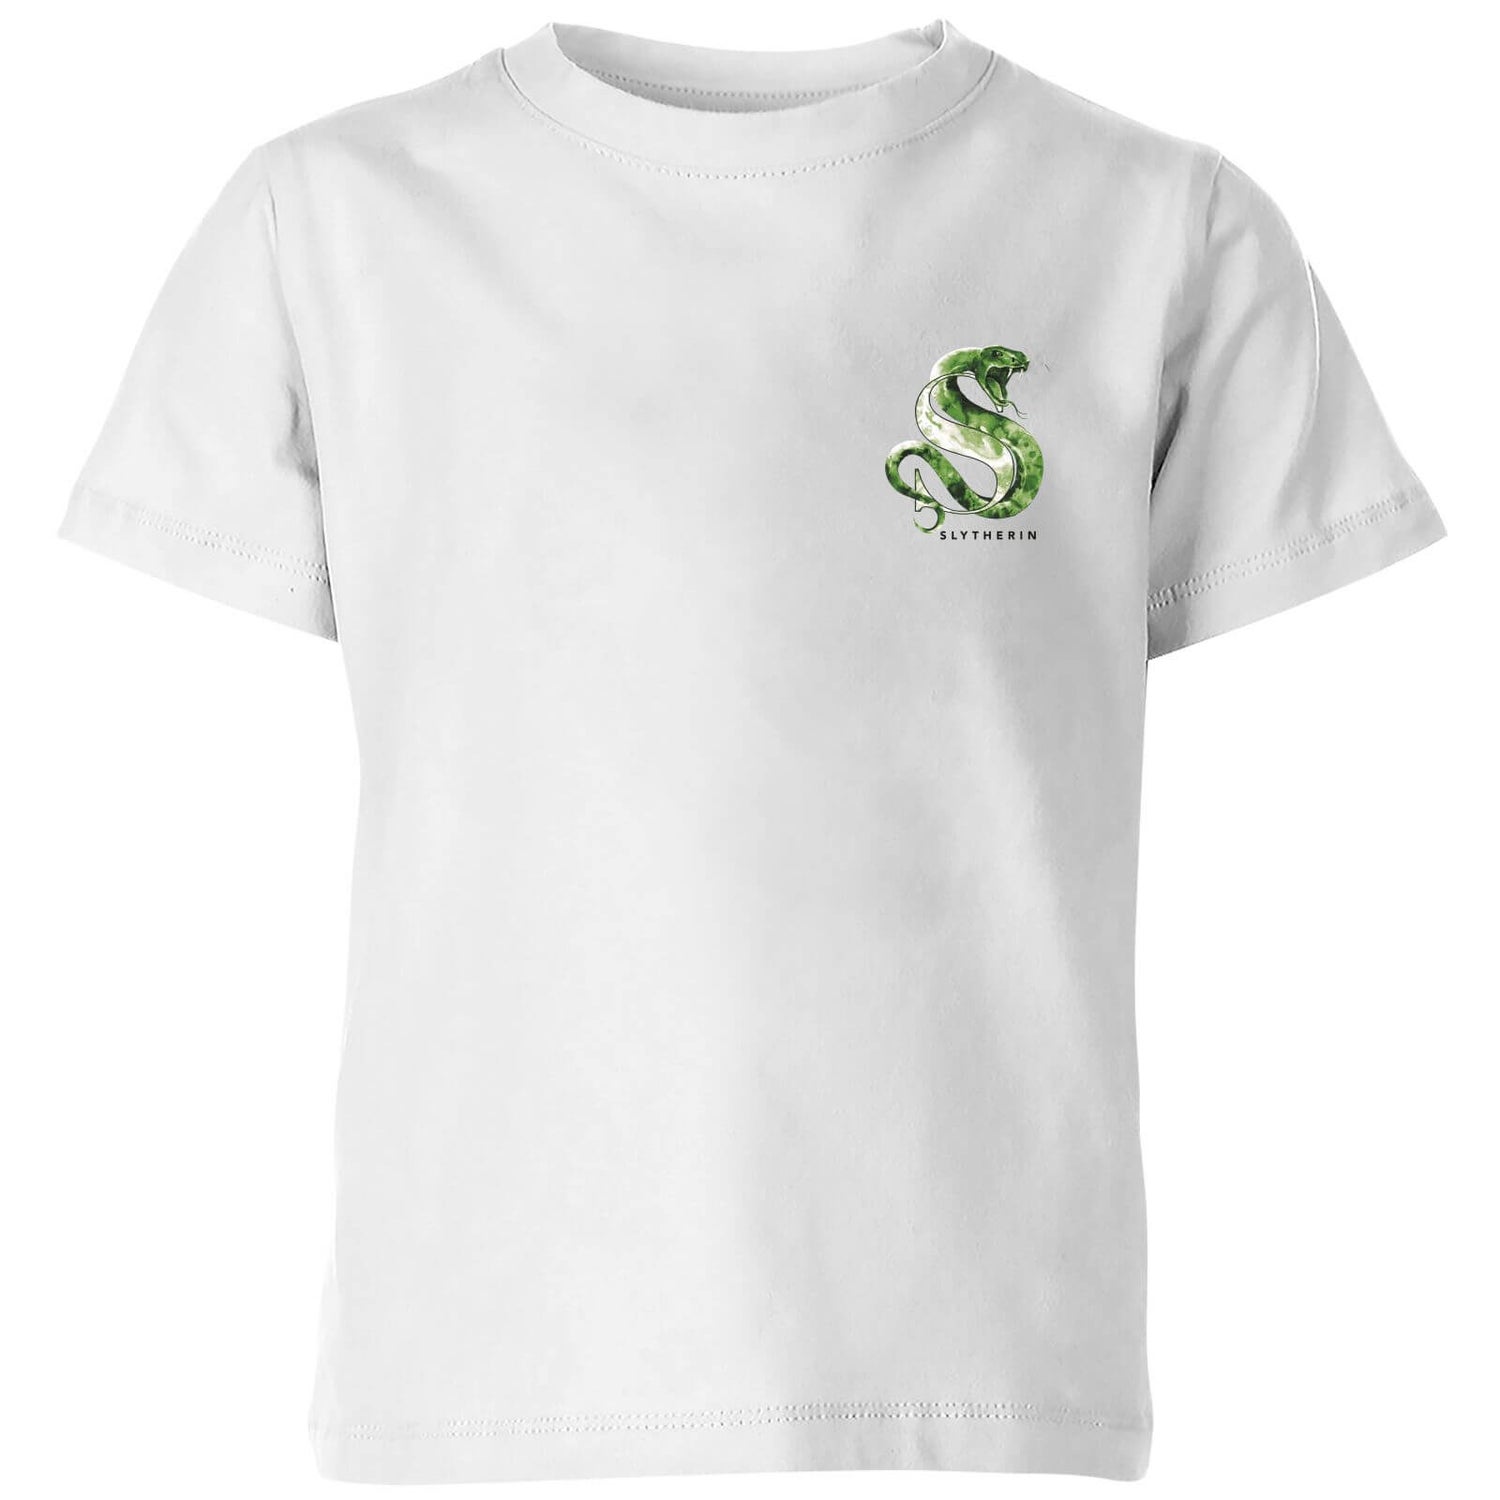 Camiseta para niños Slytherin de Harry Potter - Blanco